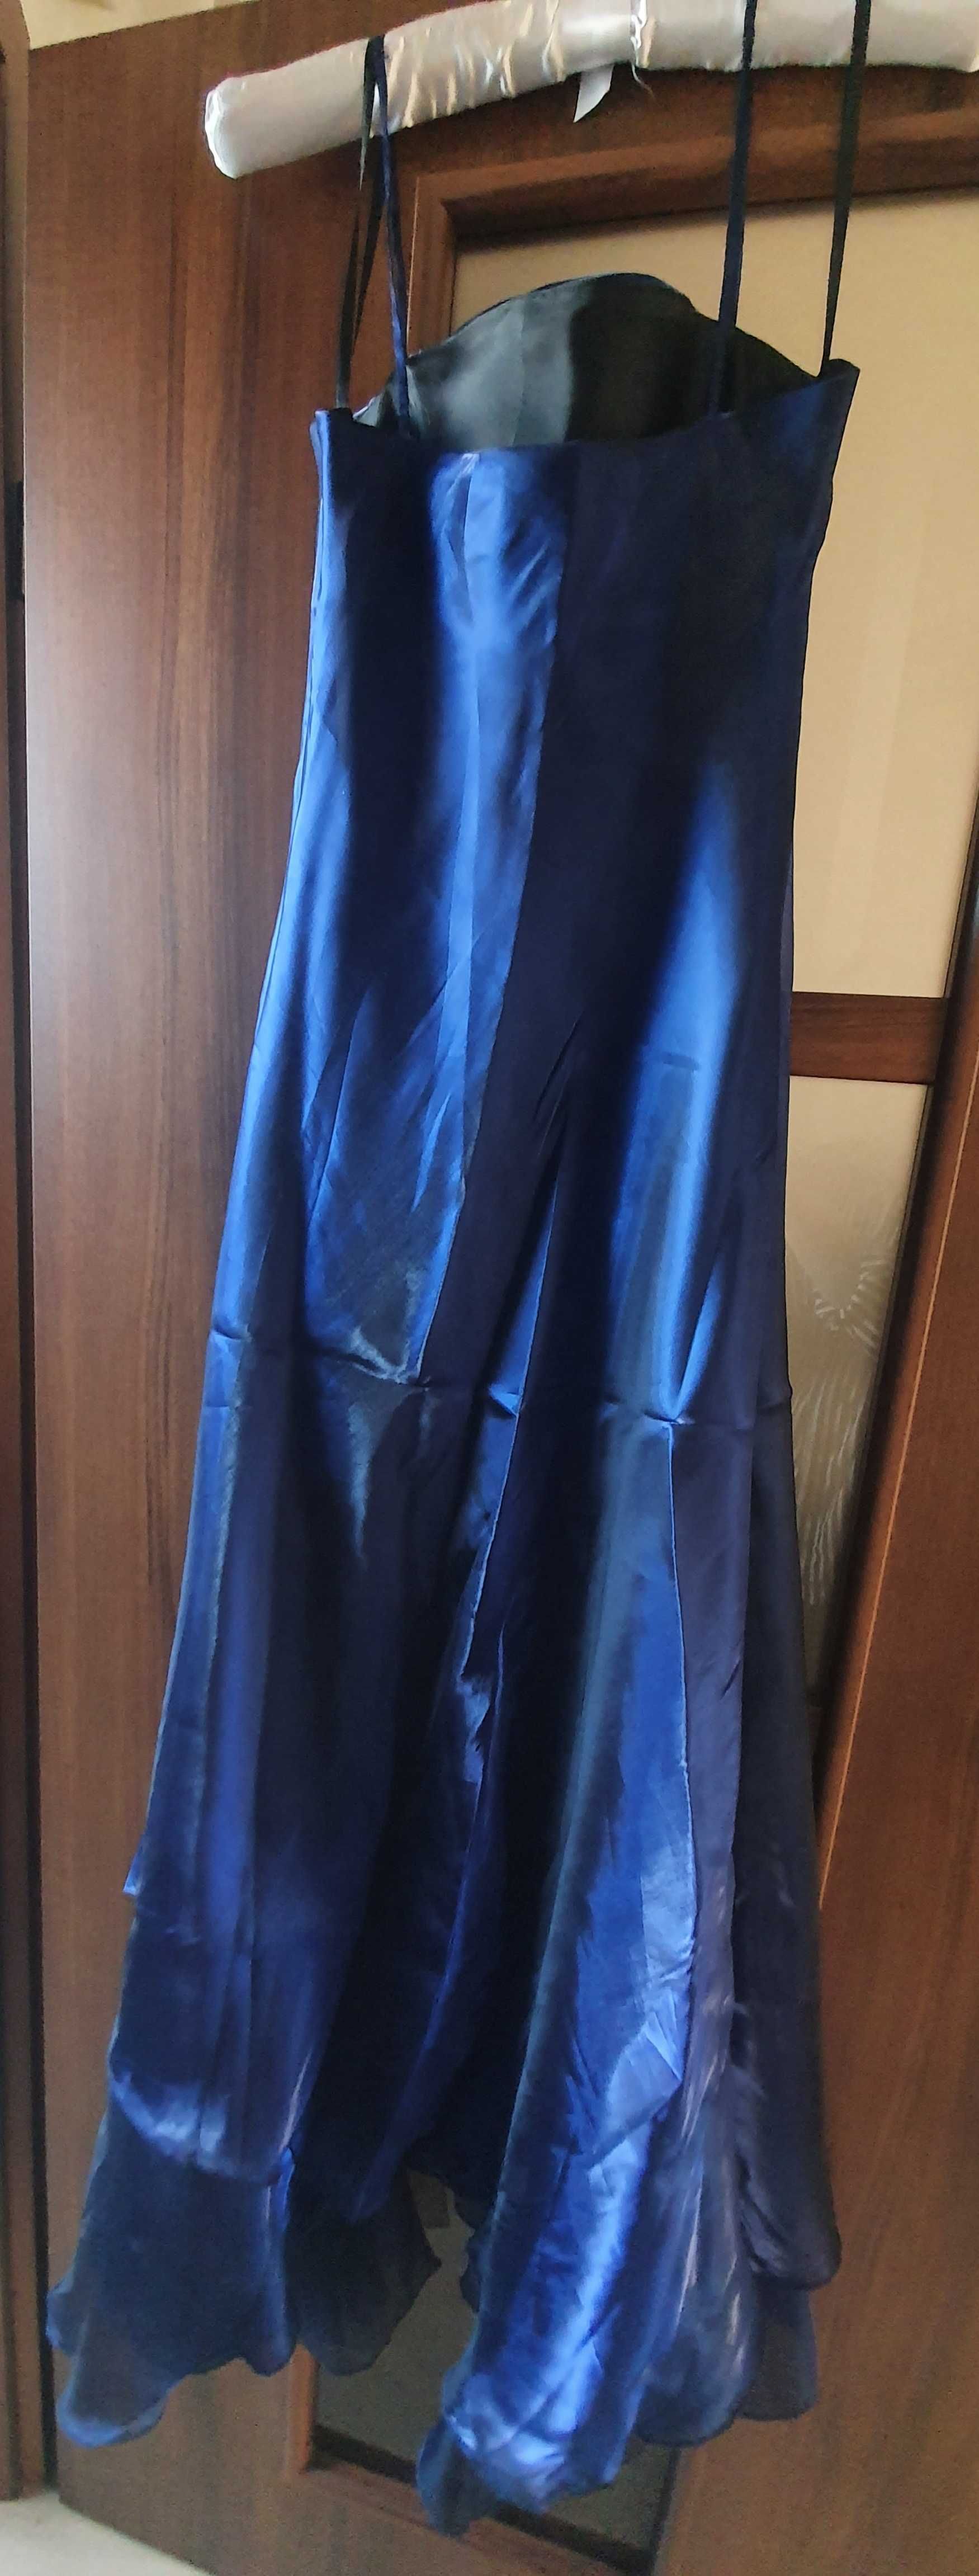 Sukienka wizytowa #długa #granat #organtyna z szalem #r.38 #Sprzedam